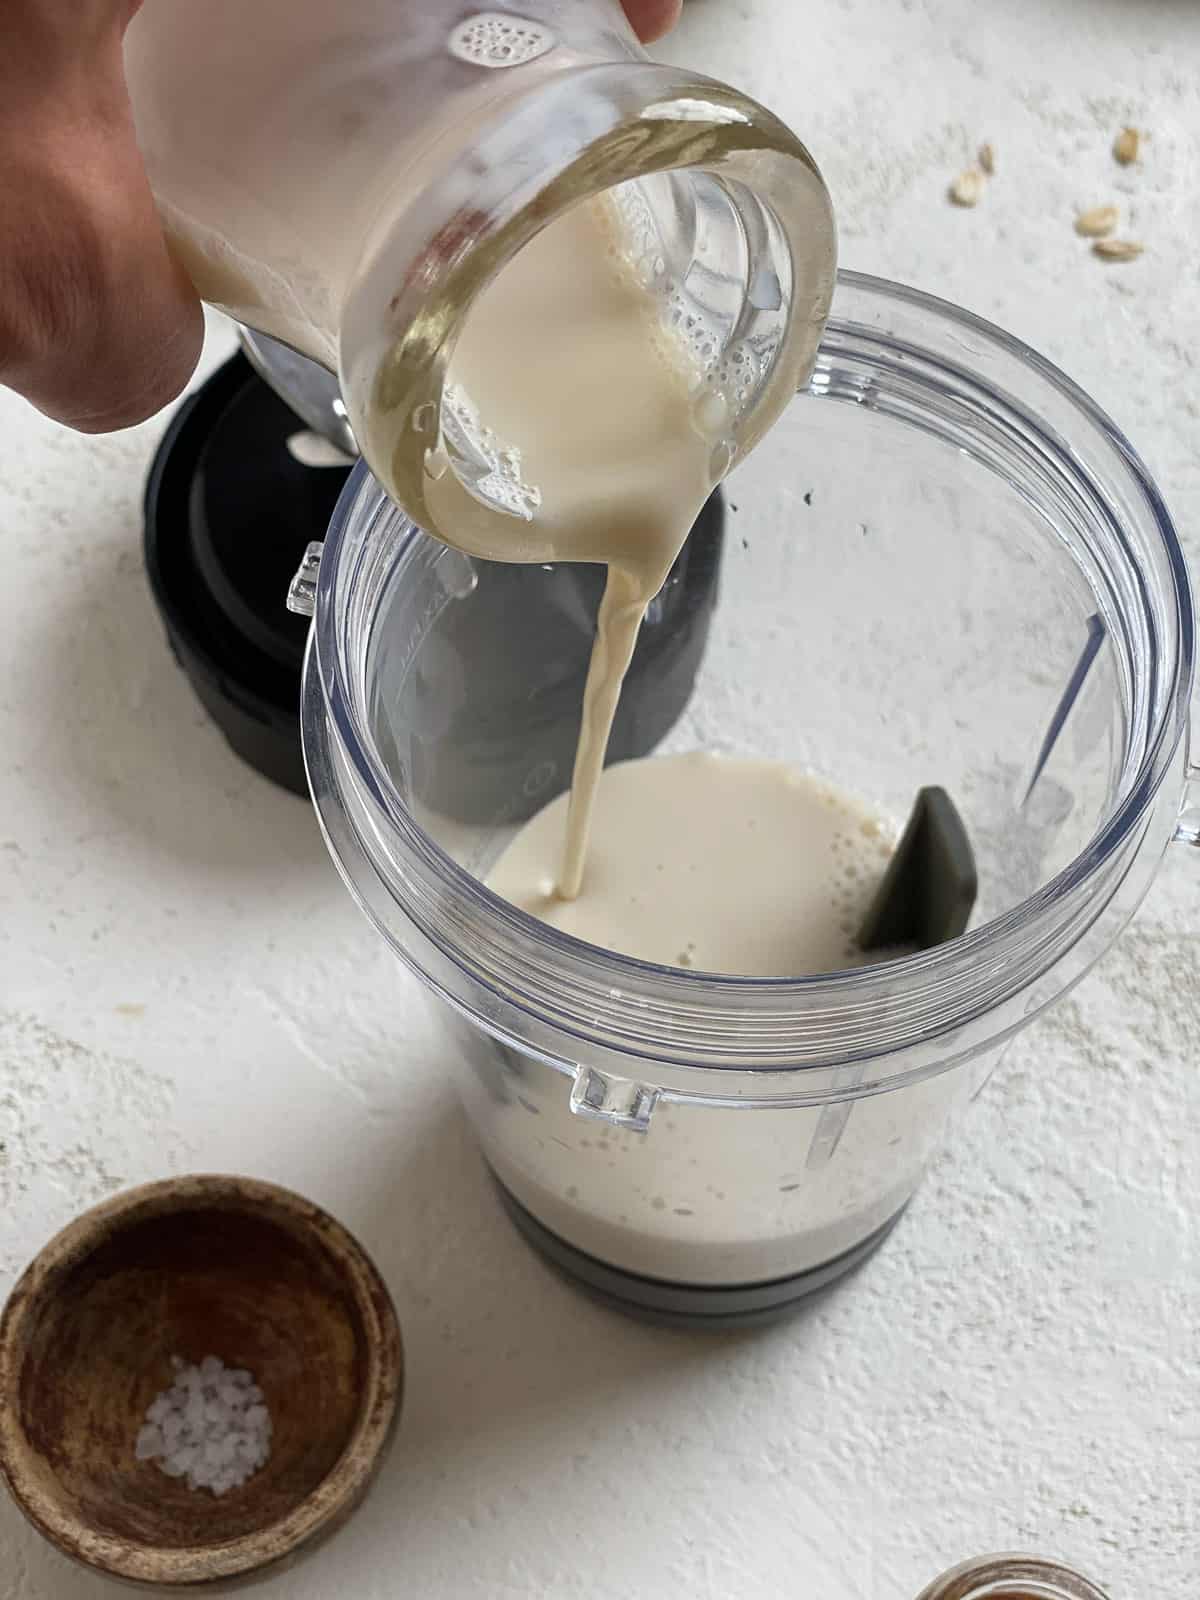 فرآیند اضافه ، شیر به ظرف